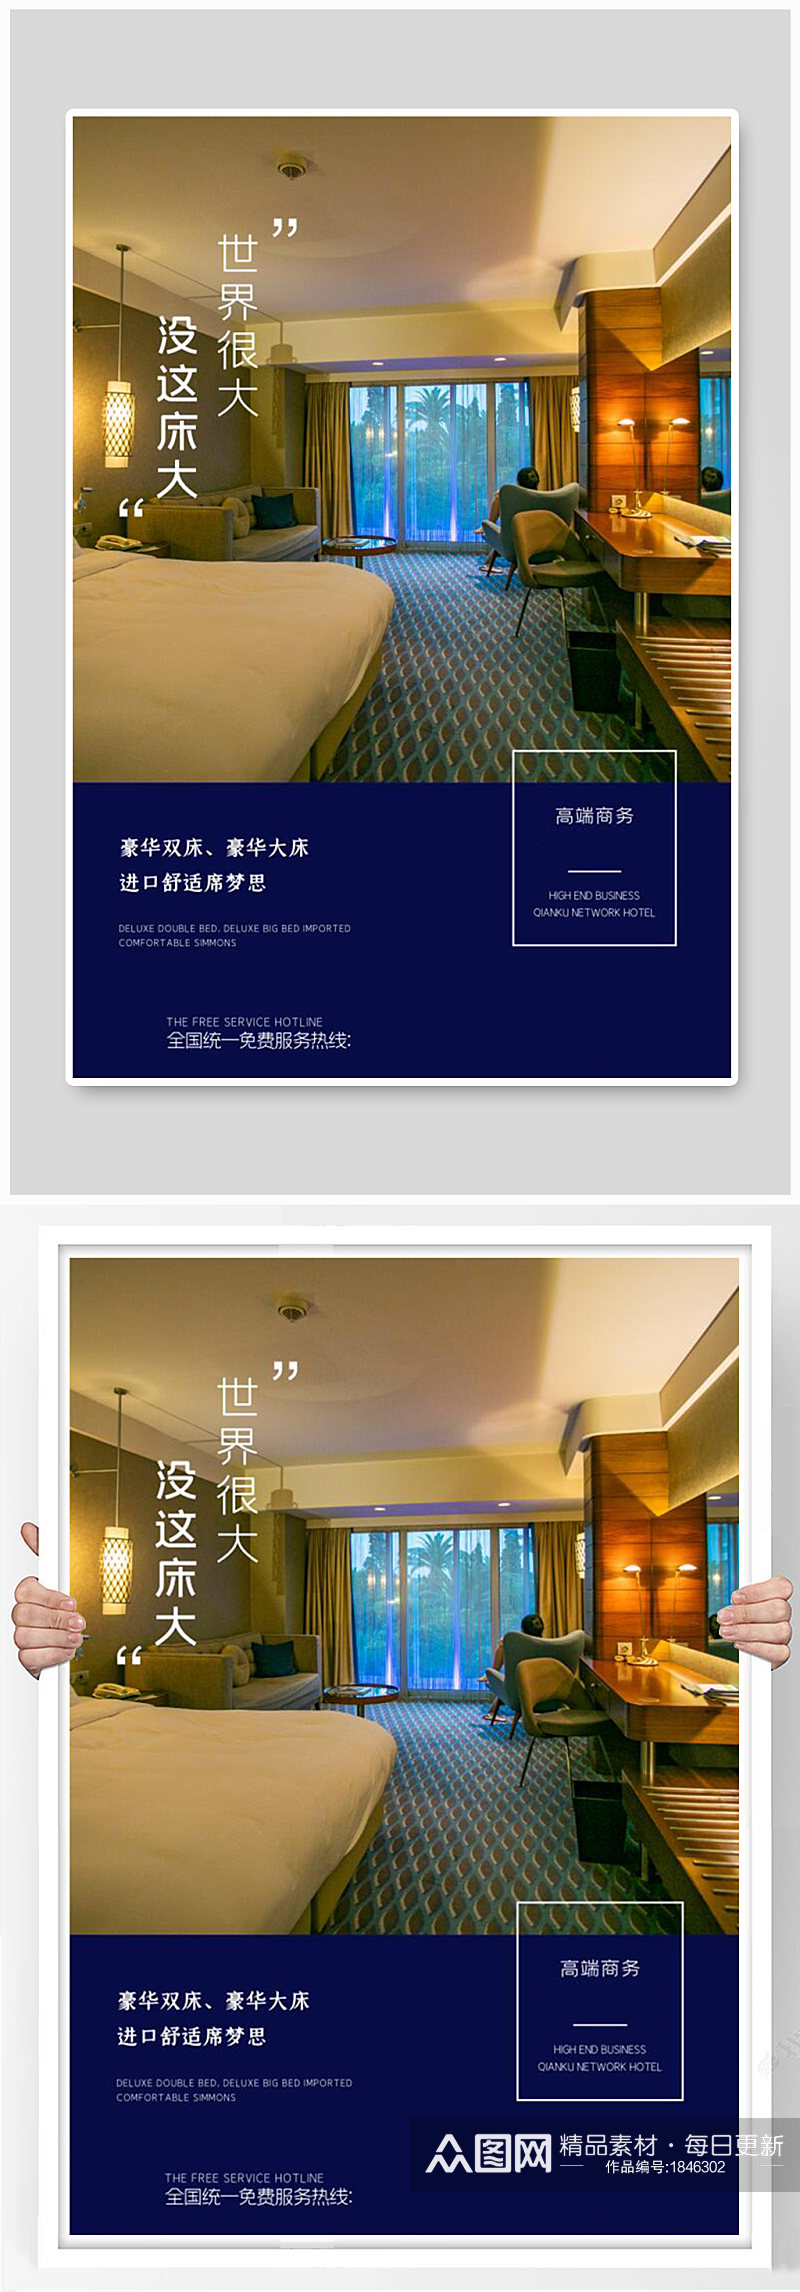 酒店宣传深蓝大气海报素材